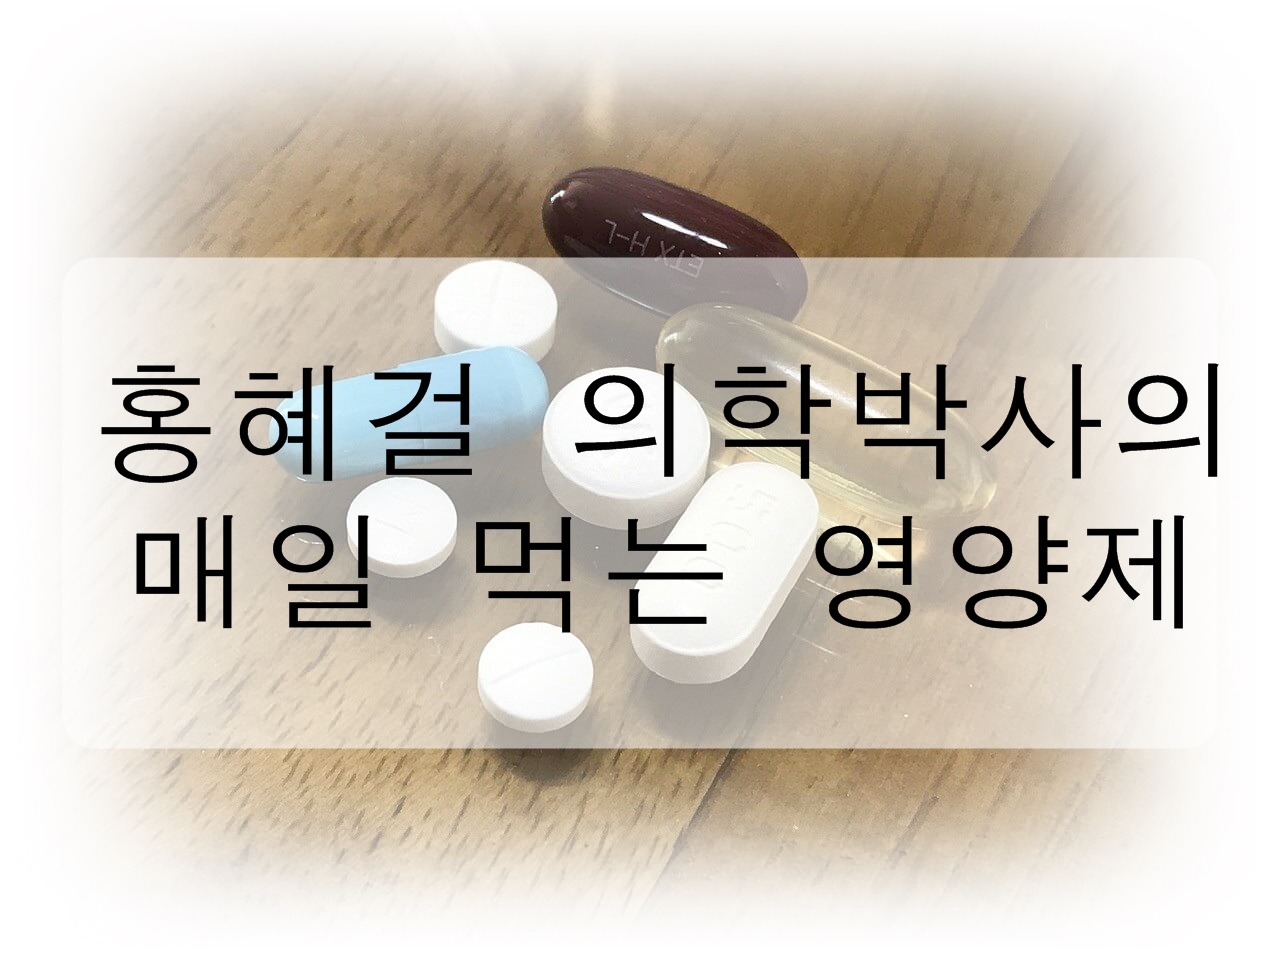 홍혜걸 의학박사가 매일 먹는 영양제를 알아보고 궁금증을 풀어보자! (필수 영양제&#44; 영양제 고르는 법)